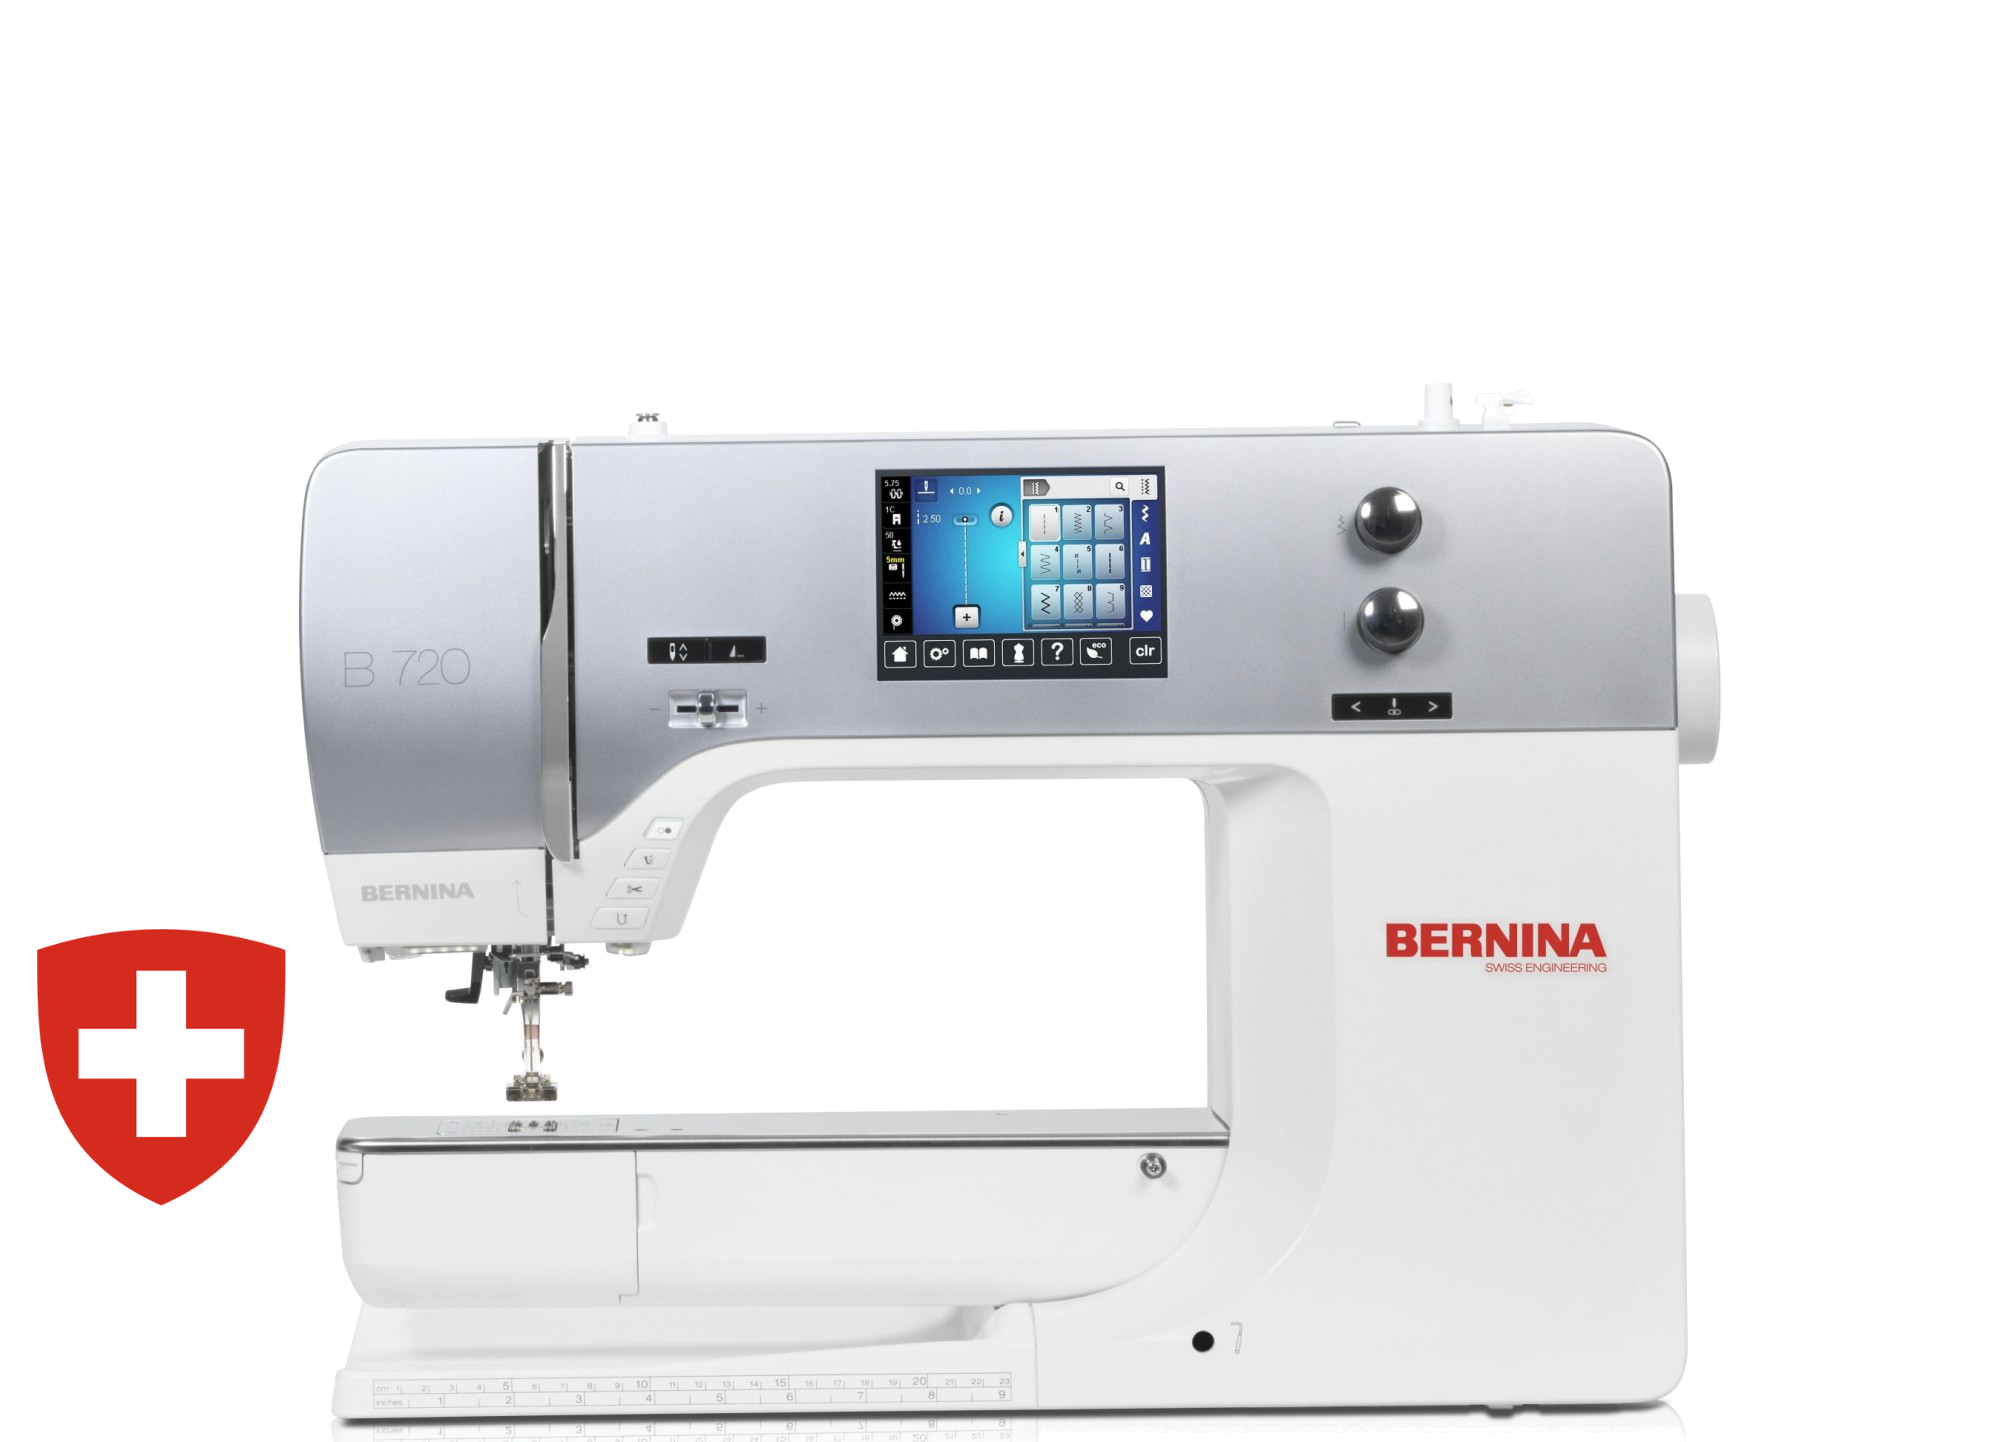 Kompiuterizuota siuvimo-siuvinėjimo mašina BERNINA 720